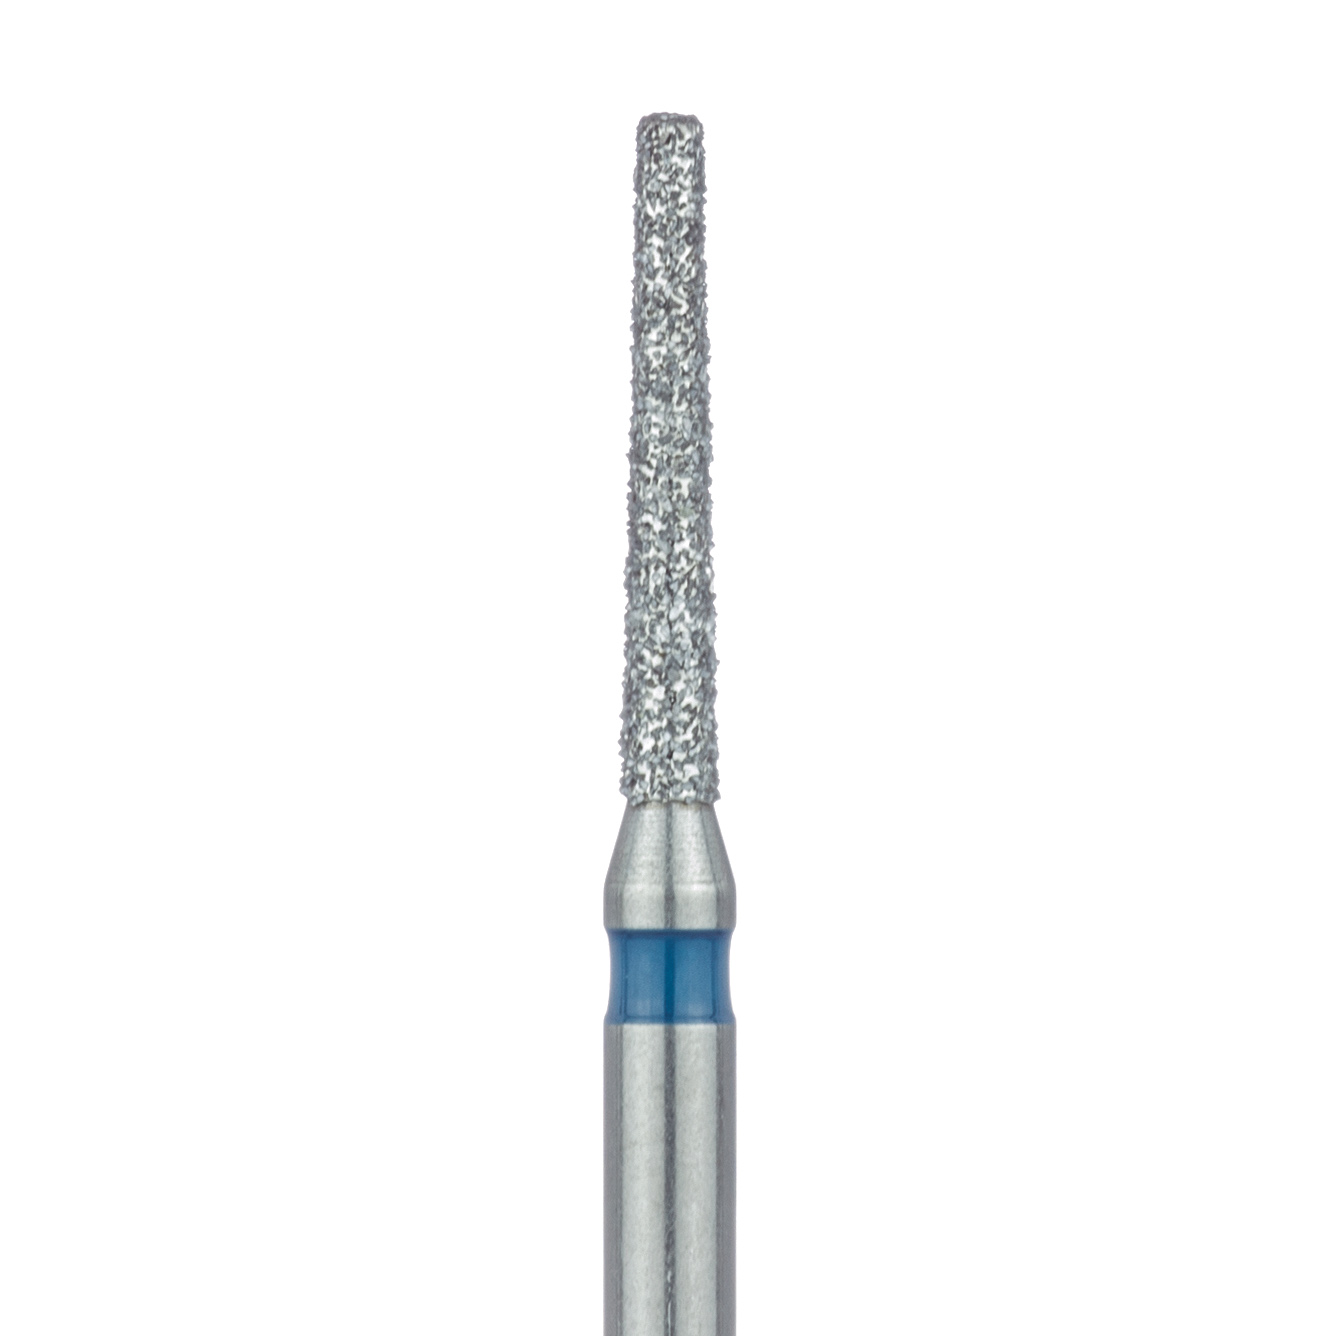 847-012-FG Long Tapered Flat End Diamond Bur, 1.2mm Ø, Medium, 0.7mm Tip Ø, FG